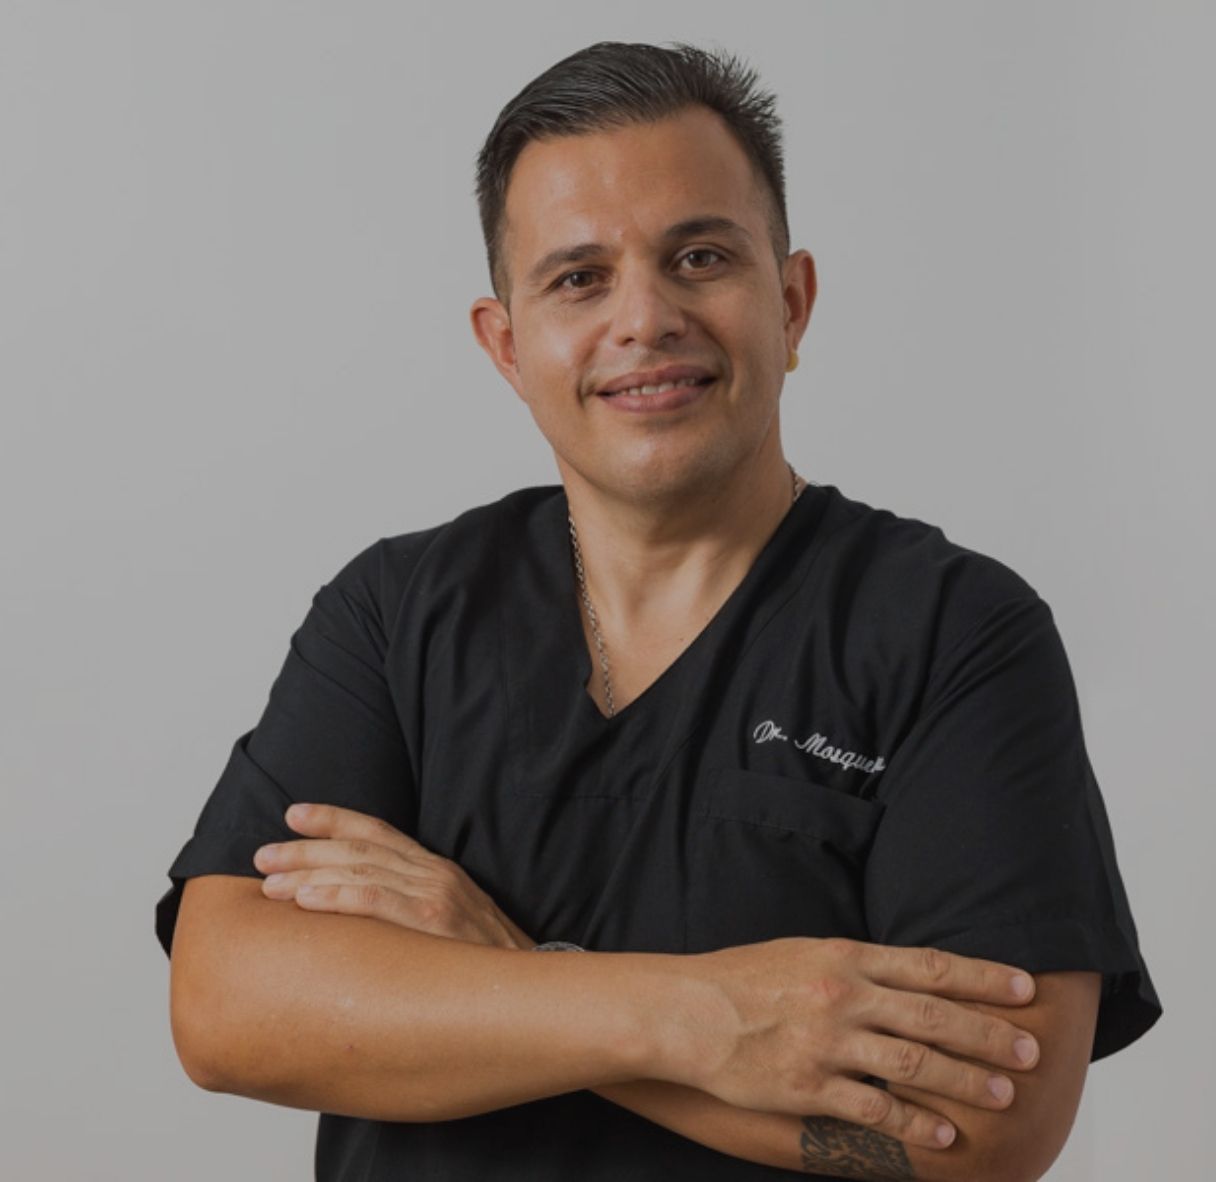 Dr. Luis Mosqueira